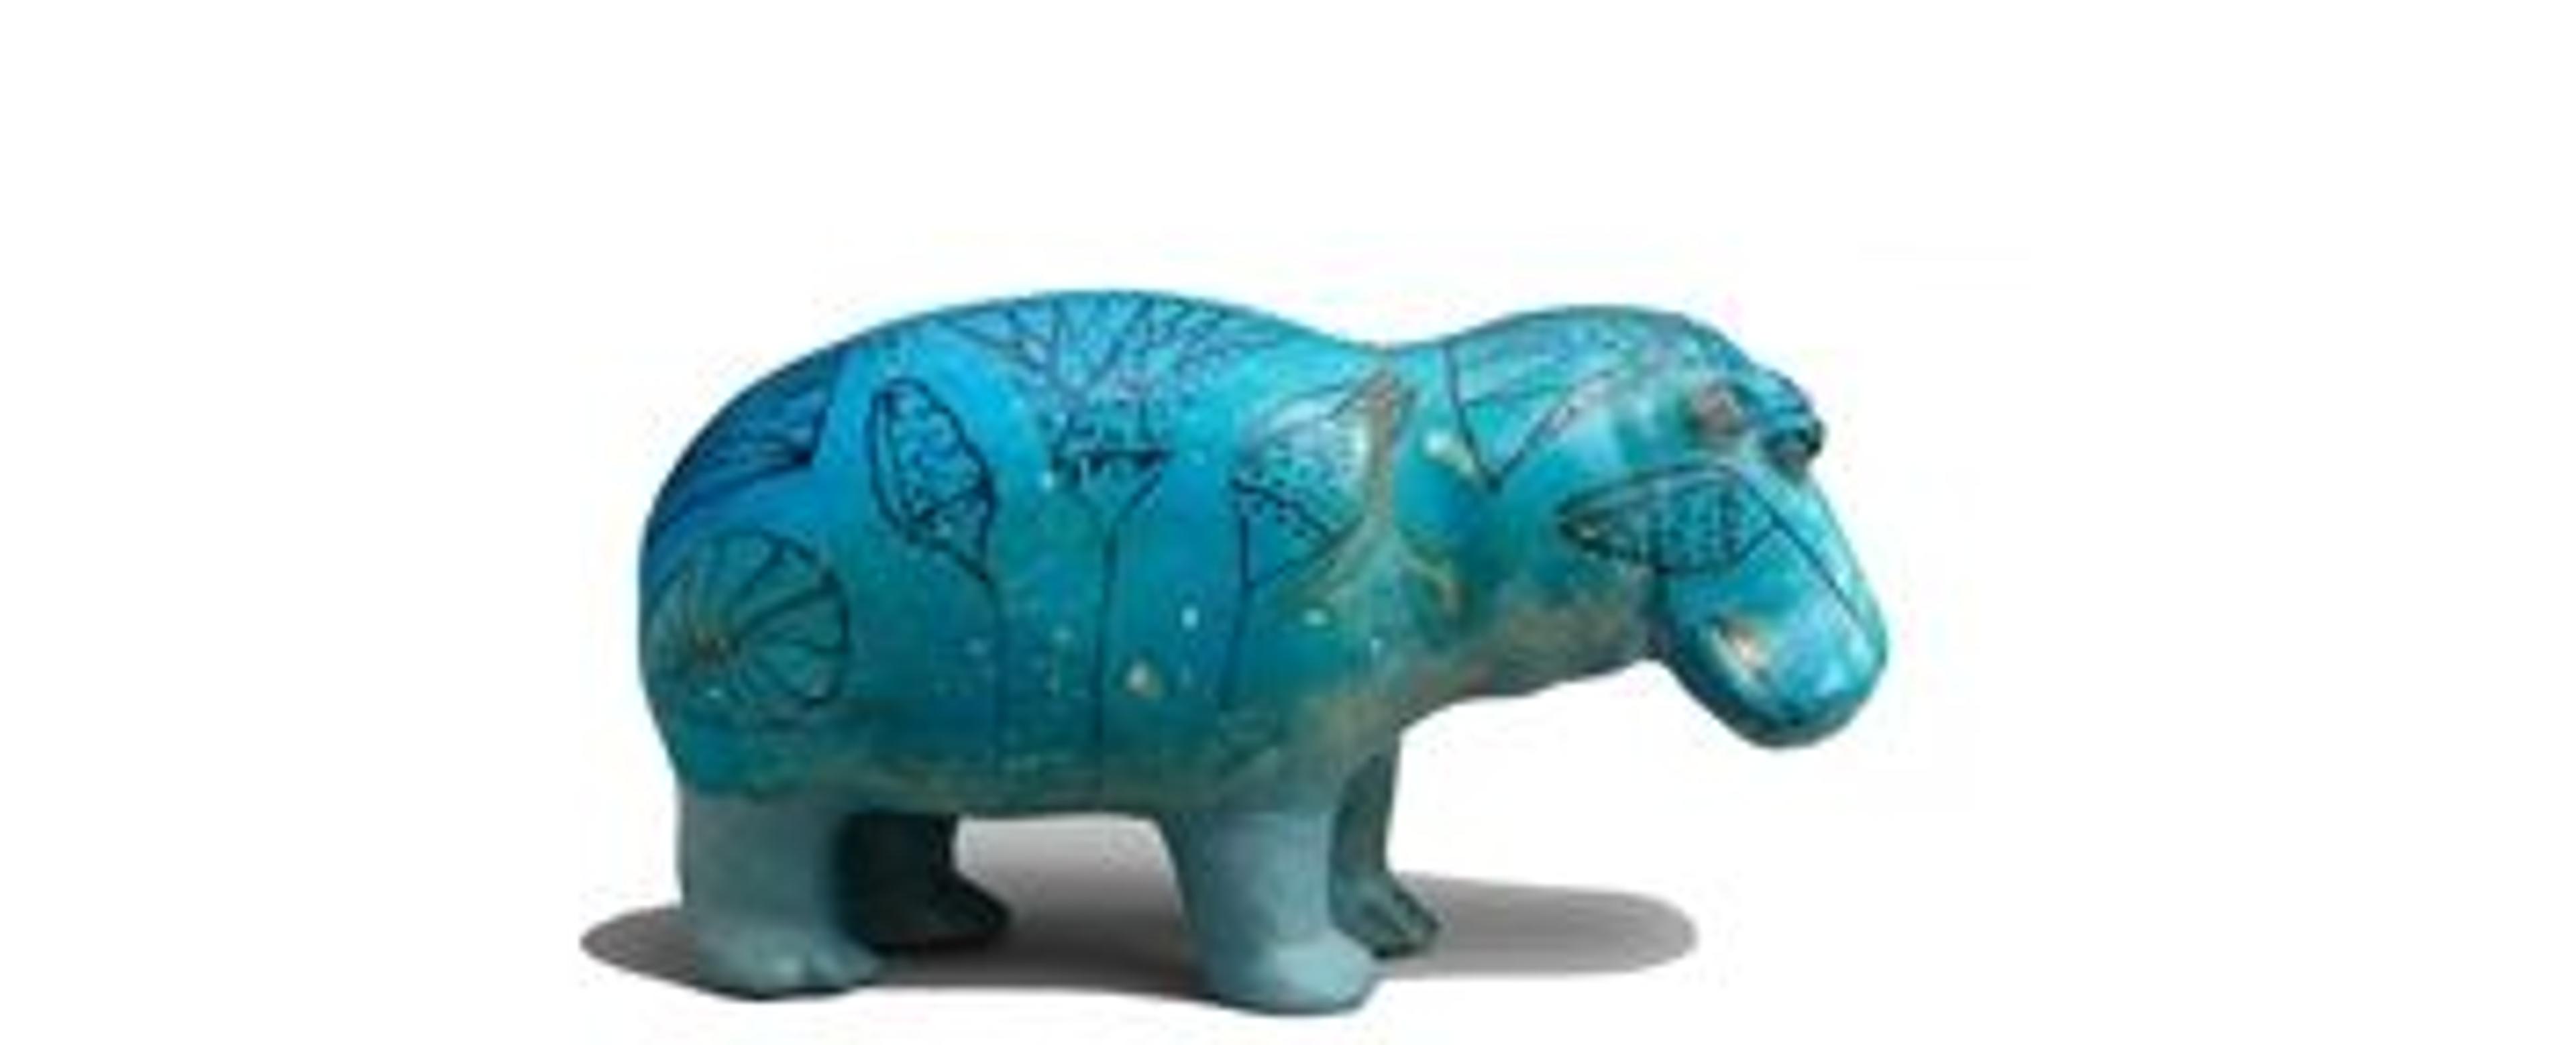 Profile view of blue ceramic hippopotamus